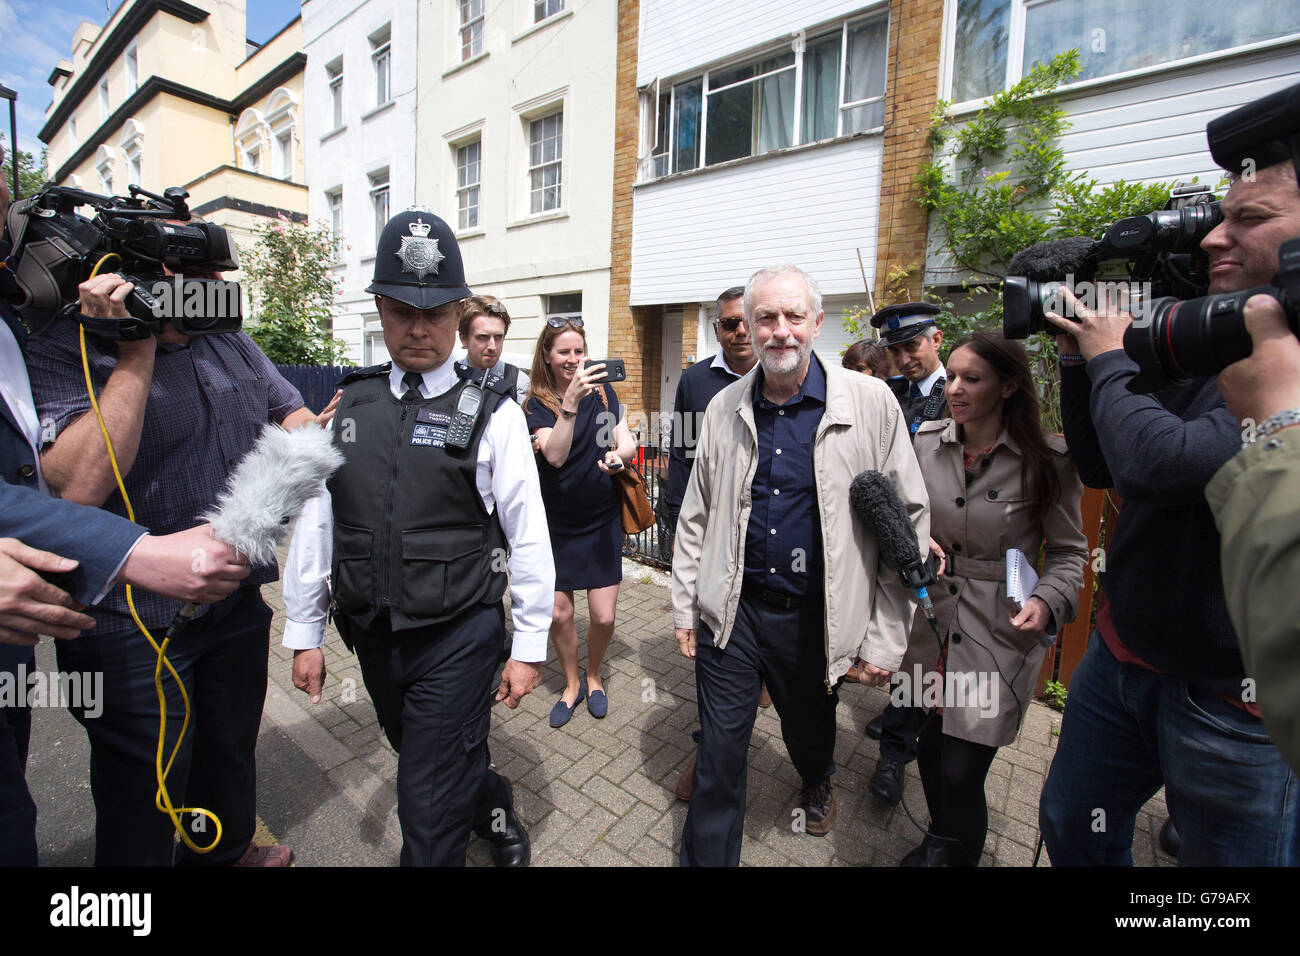 Londres, Royaume-Uni. 26 Juin, 2016. Appuyez sur d'attendre à l'extérieur du foyer de Jeremy Corbyn, chef du Parti travailliste en Grande-Bretagne en tant que camarades membres du parti du cabinet fantôme demande sa démission de la direction. Crédit : Jeff Gilbert/Alamy Live News Banque D'Images